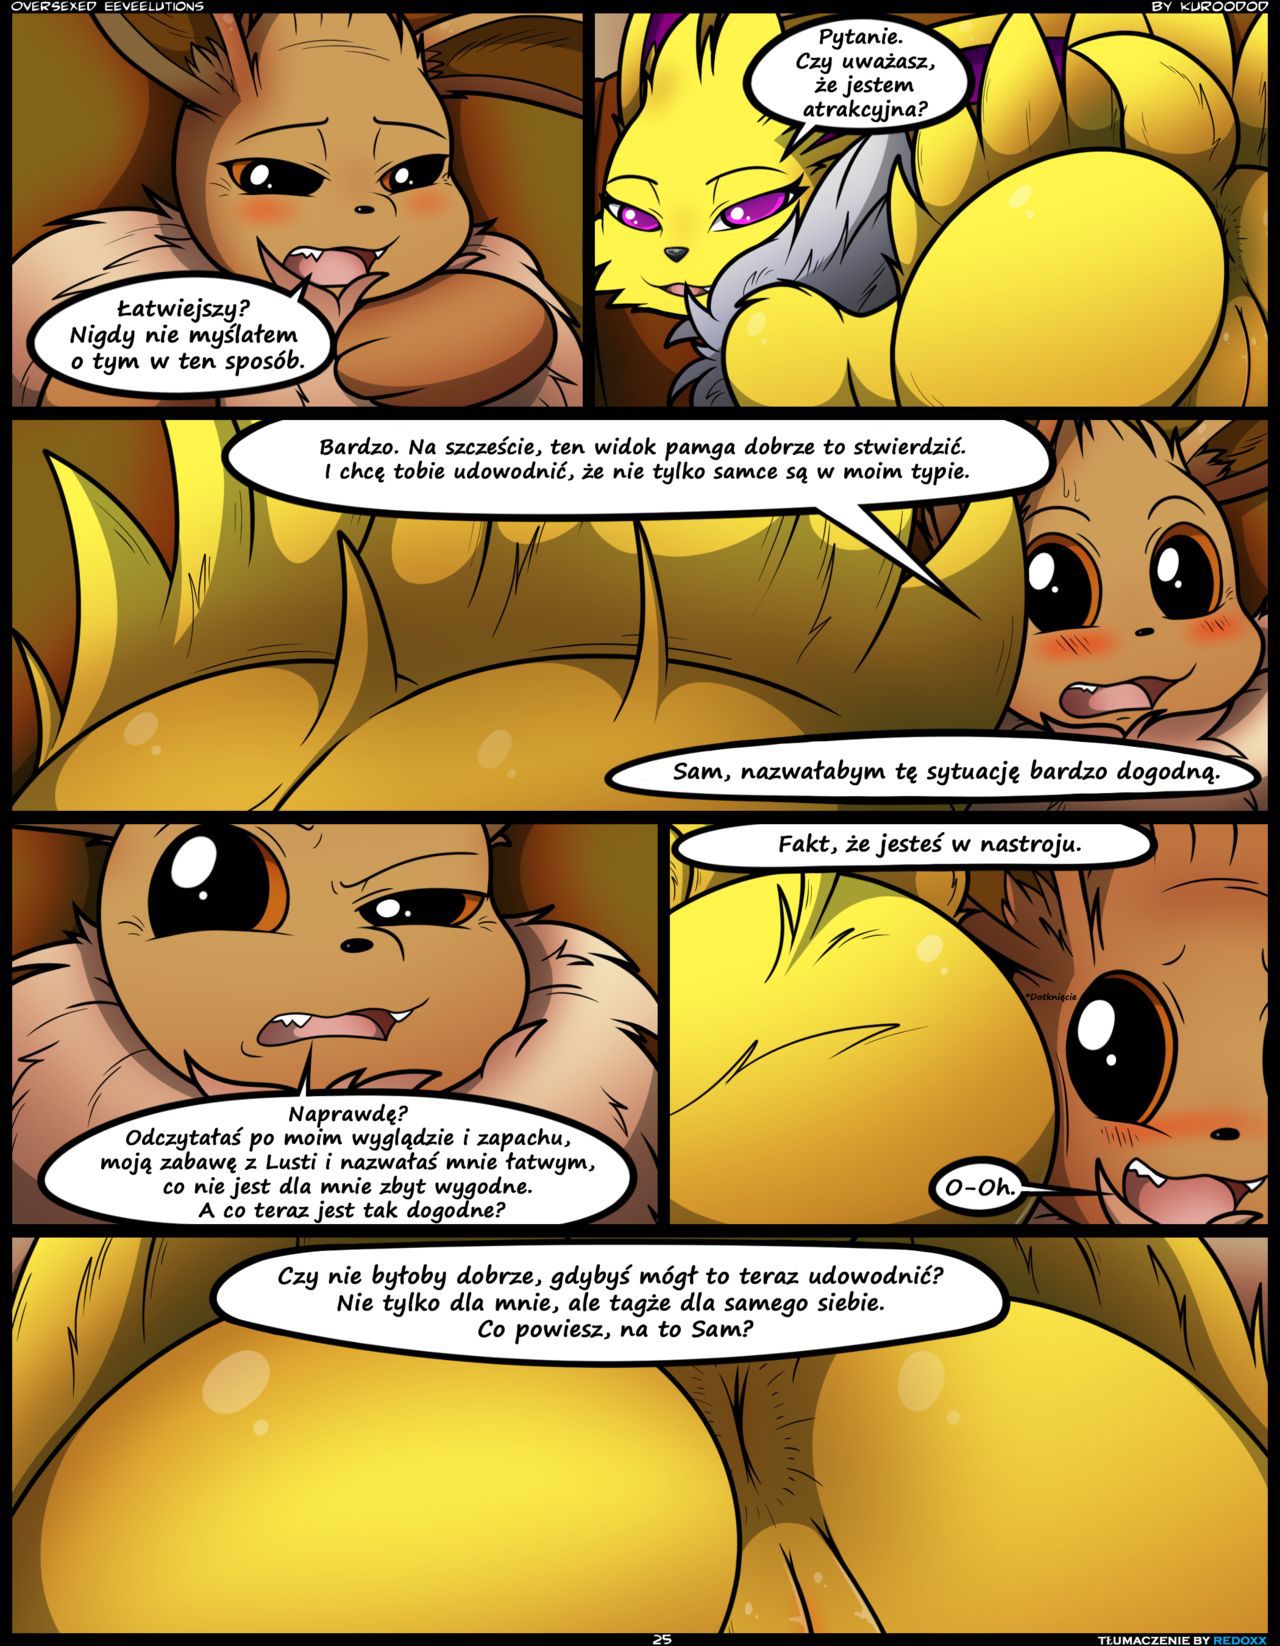 [Kuroodod] Oversexed Eeveelutions Vol. 1,2,3,4 (Pokemon) [Polish] [ReDoXX](ongoing) 25